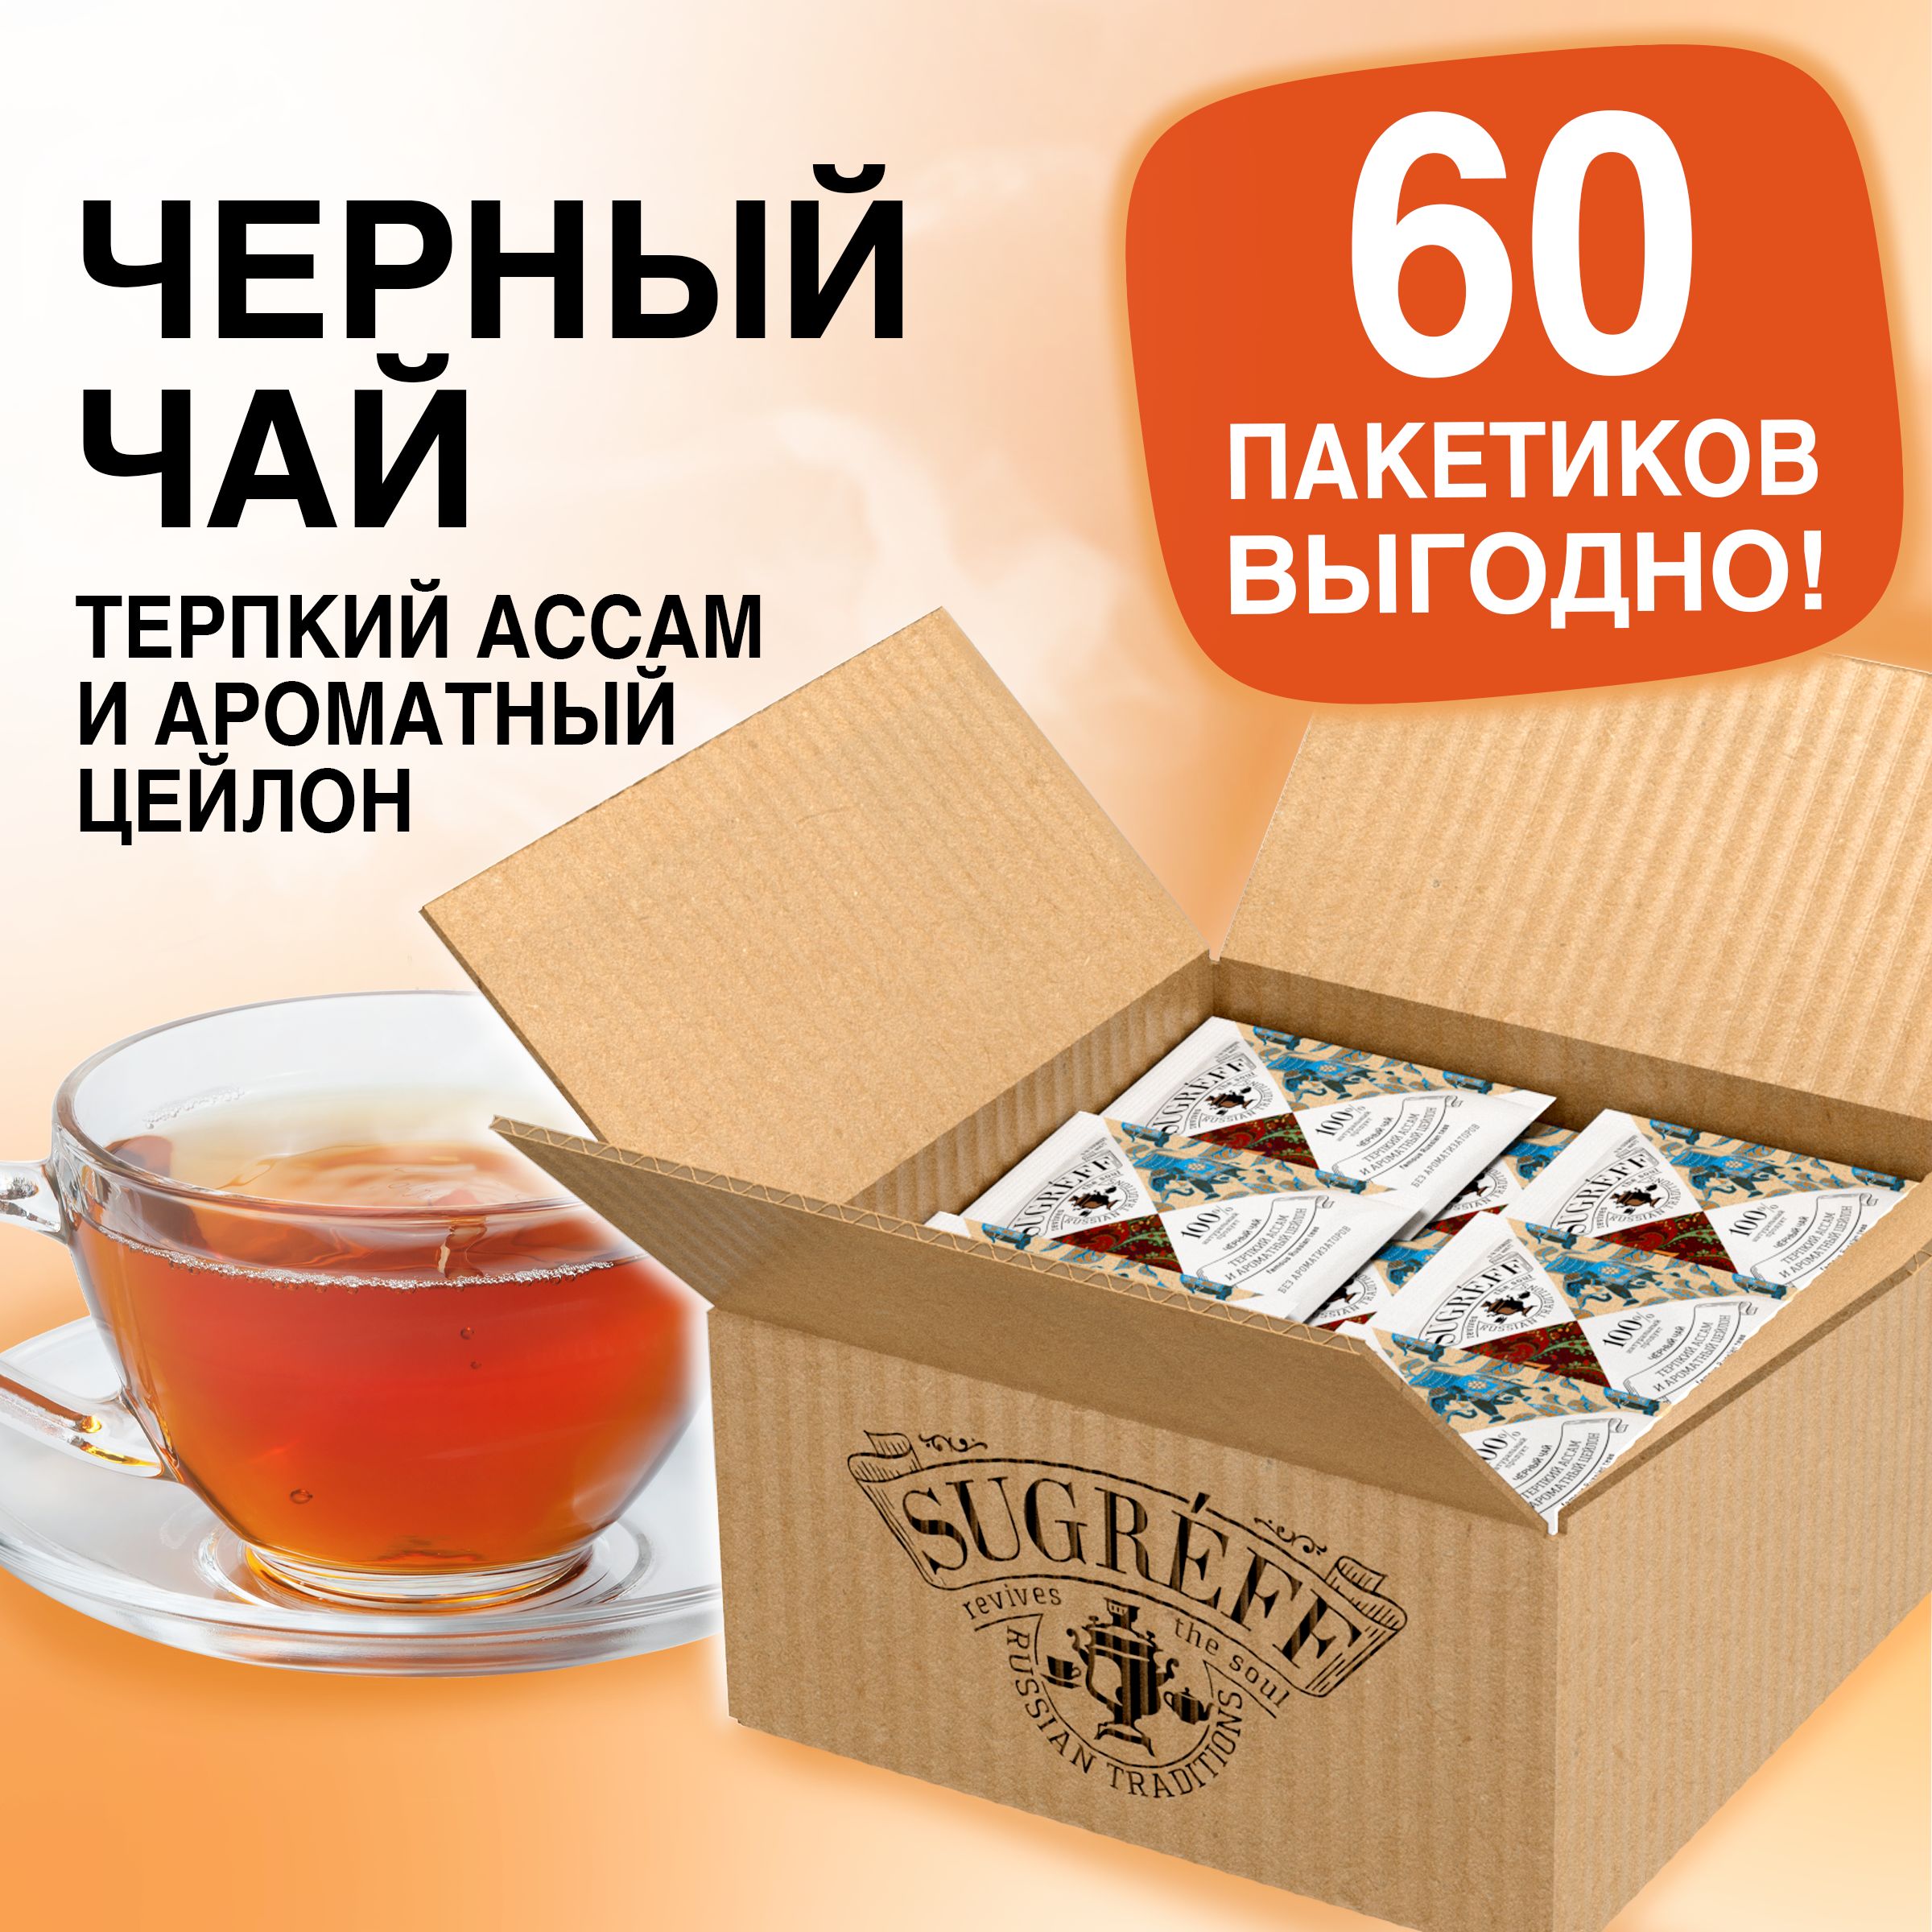 Чай в пакетиках в магните. Чай сугрев. Чай в пакетиках фирмы. Белорусский чай в пакетиках. Дорогой чай в пакетиках.